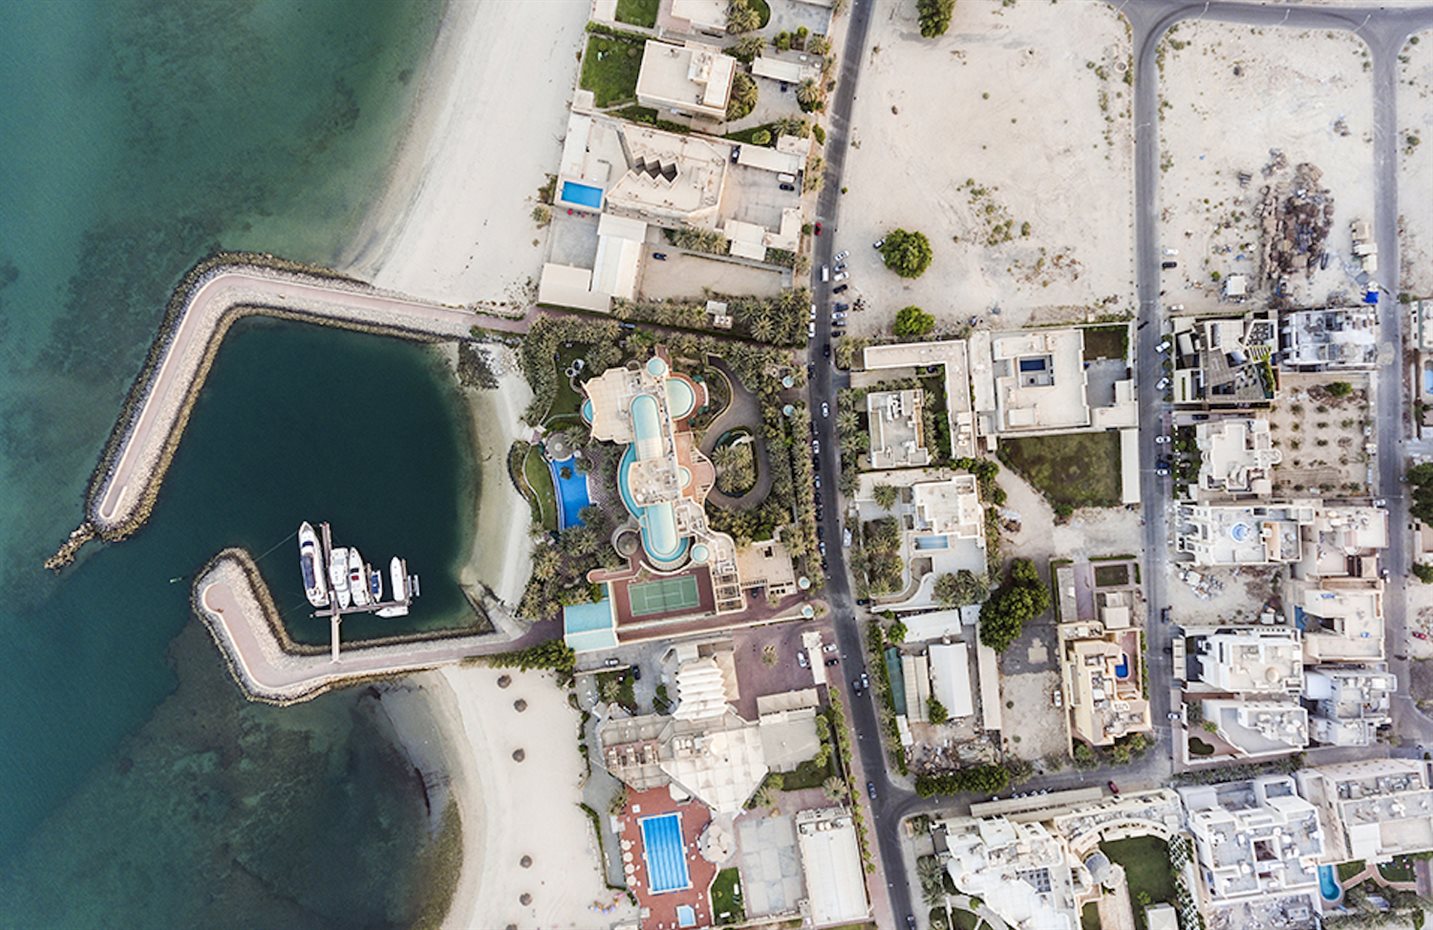 005. Vista aérea del barrio de Kuwait donde se ha construido. Se sitúa arriba a la derecha